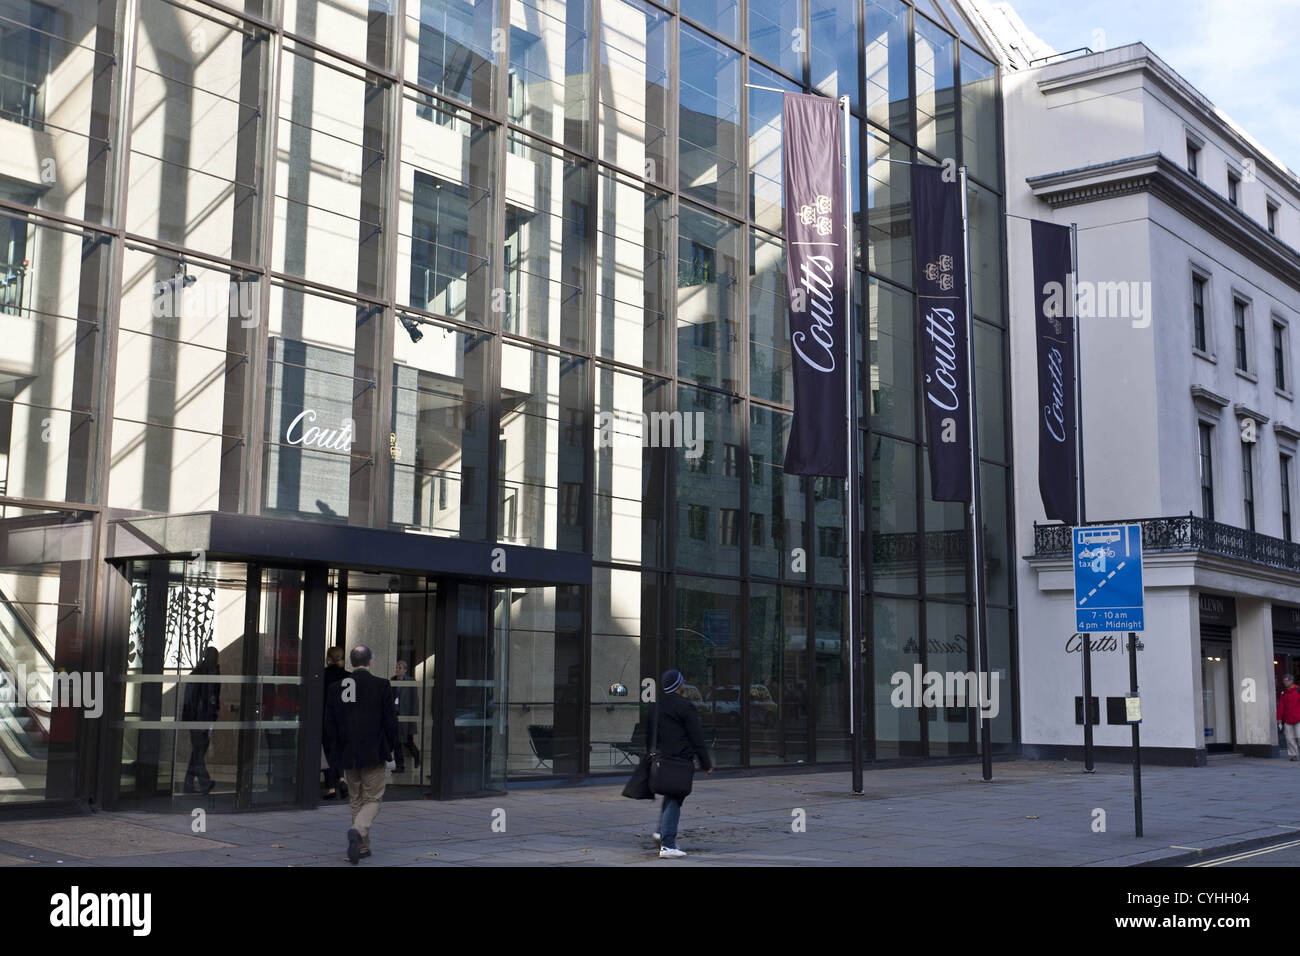 Londres, Reino Unido. 5/11/2012. (Foto) La gente caminando pase Coutts el Wealth Management & banco privado. Peter Barbe / Alamy Foto de stock